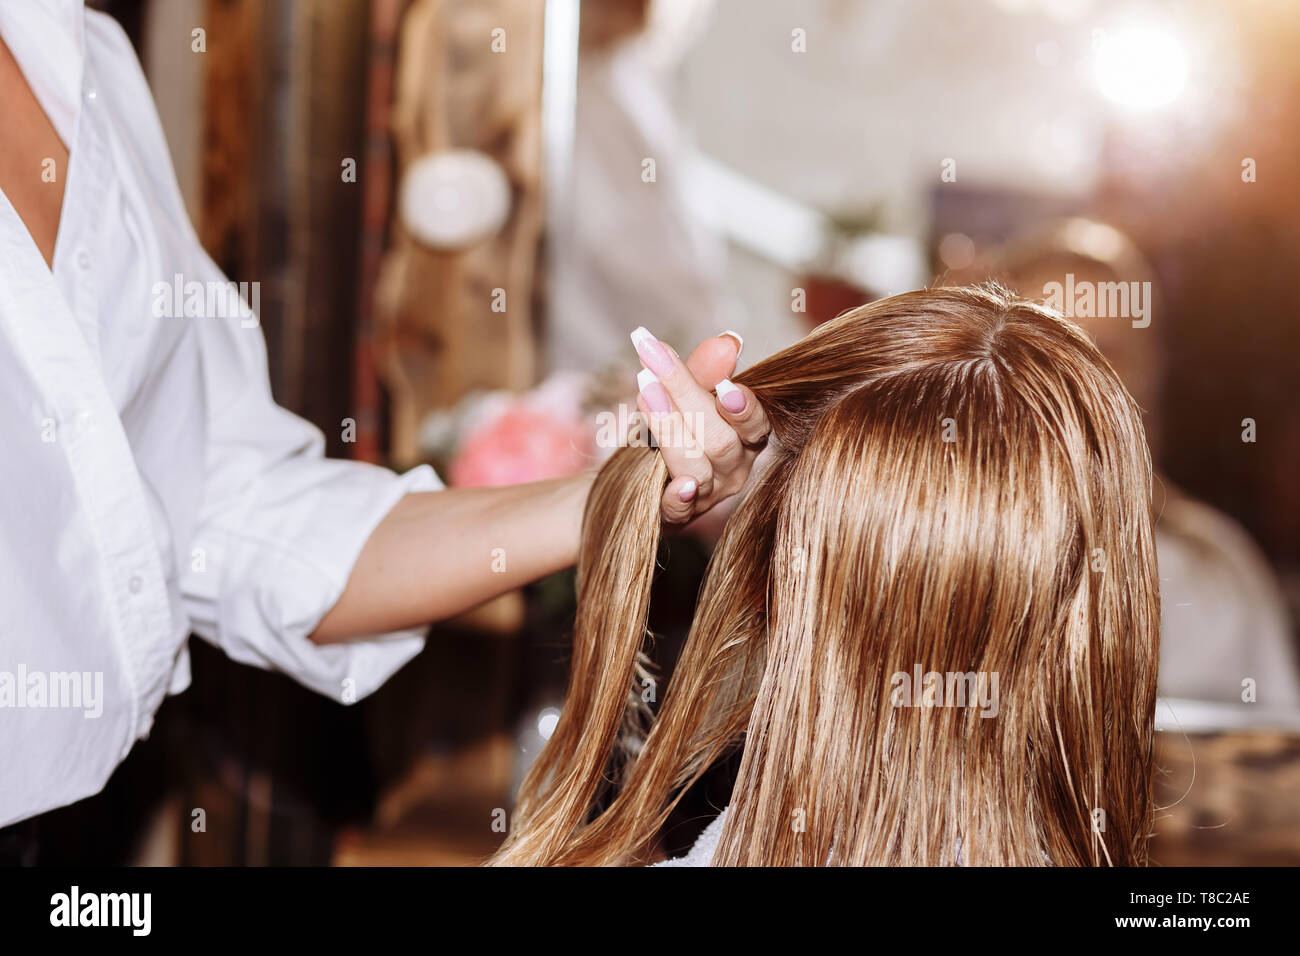 Nahaufnahme des professionellen Friseur mit Bürste und Haartrockner styling  lange blonde Haare ihrer weiblichen Kunden. Gesund glänzendes Haar der Frau  nach Haar tre Stockfotografie - Alamy